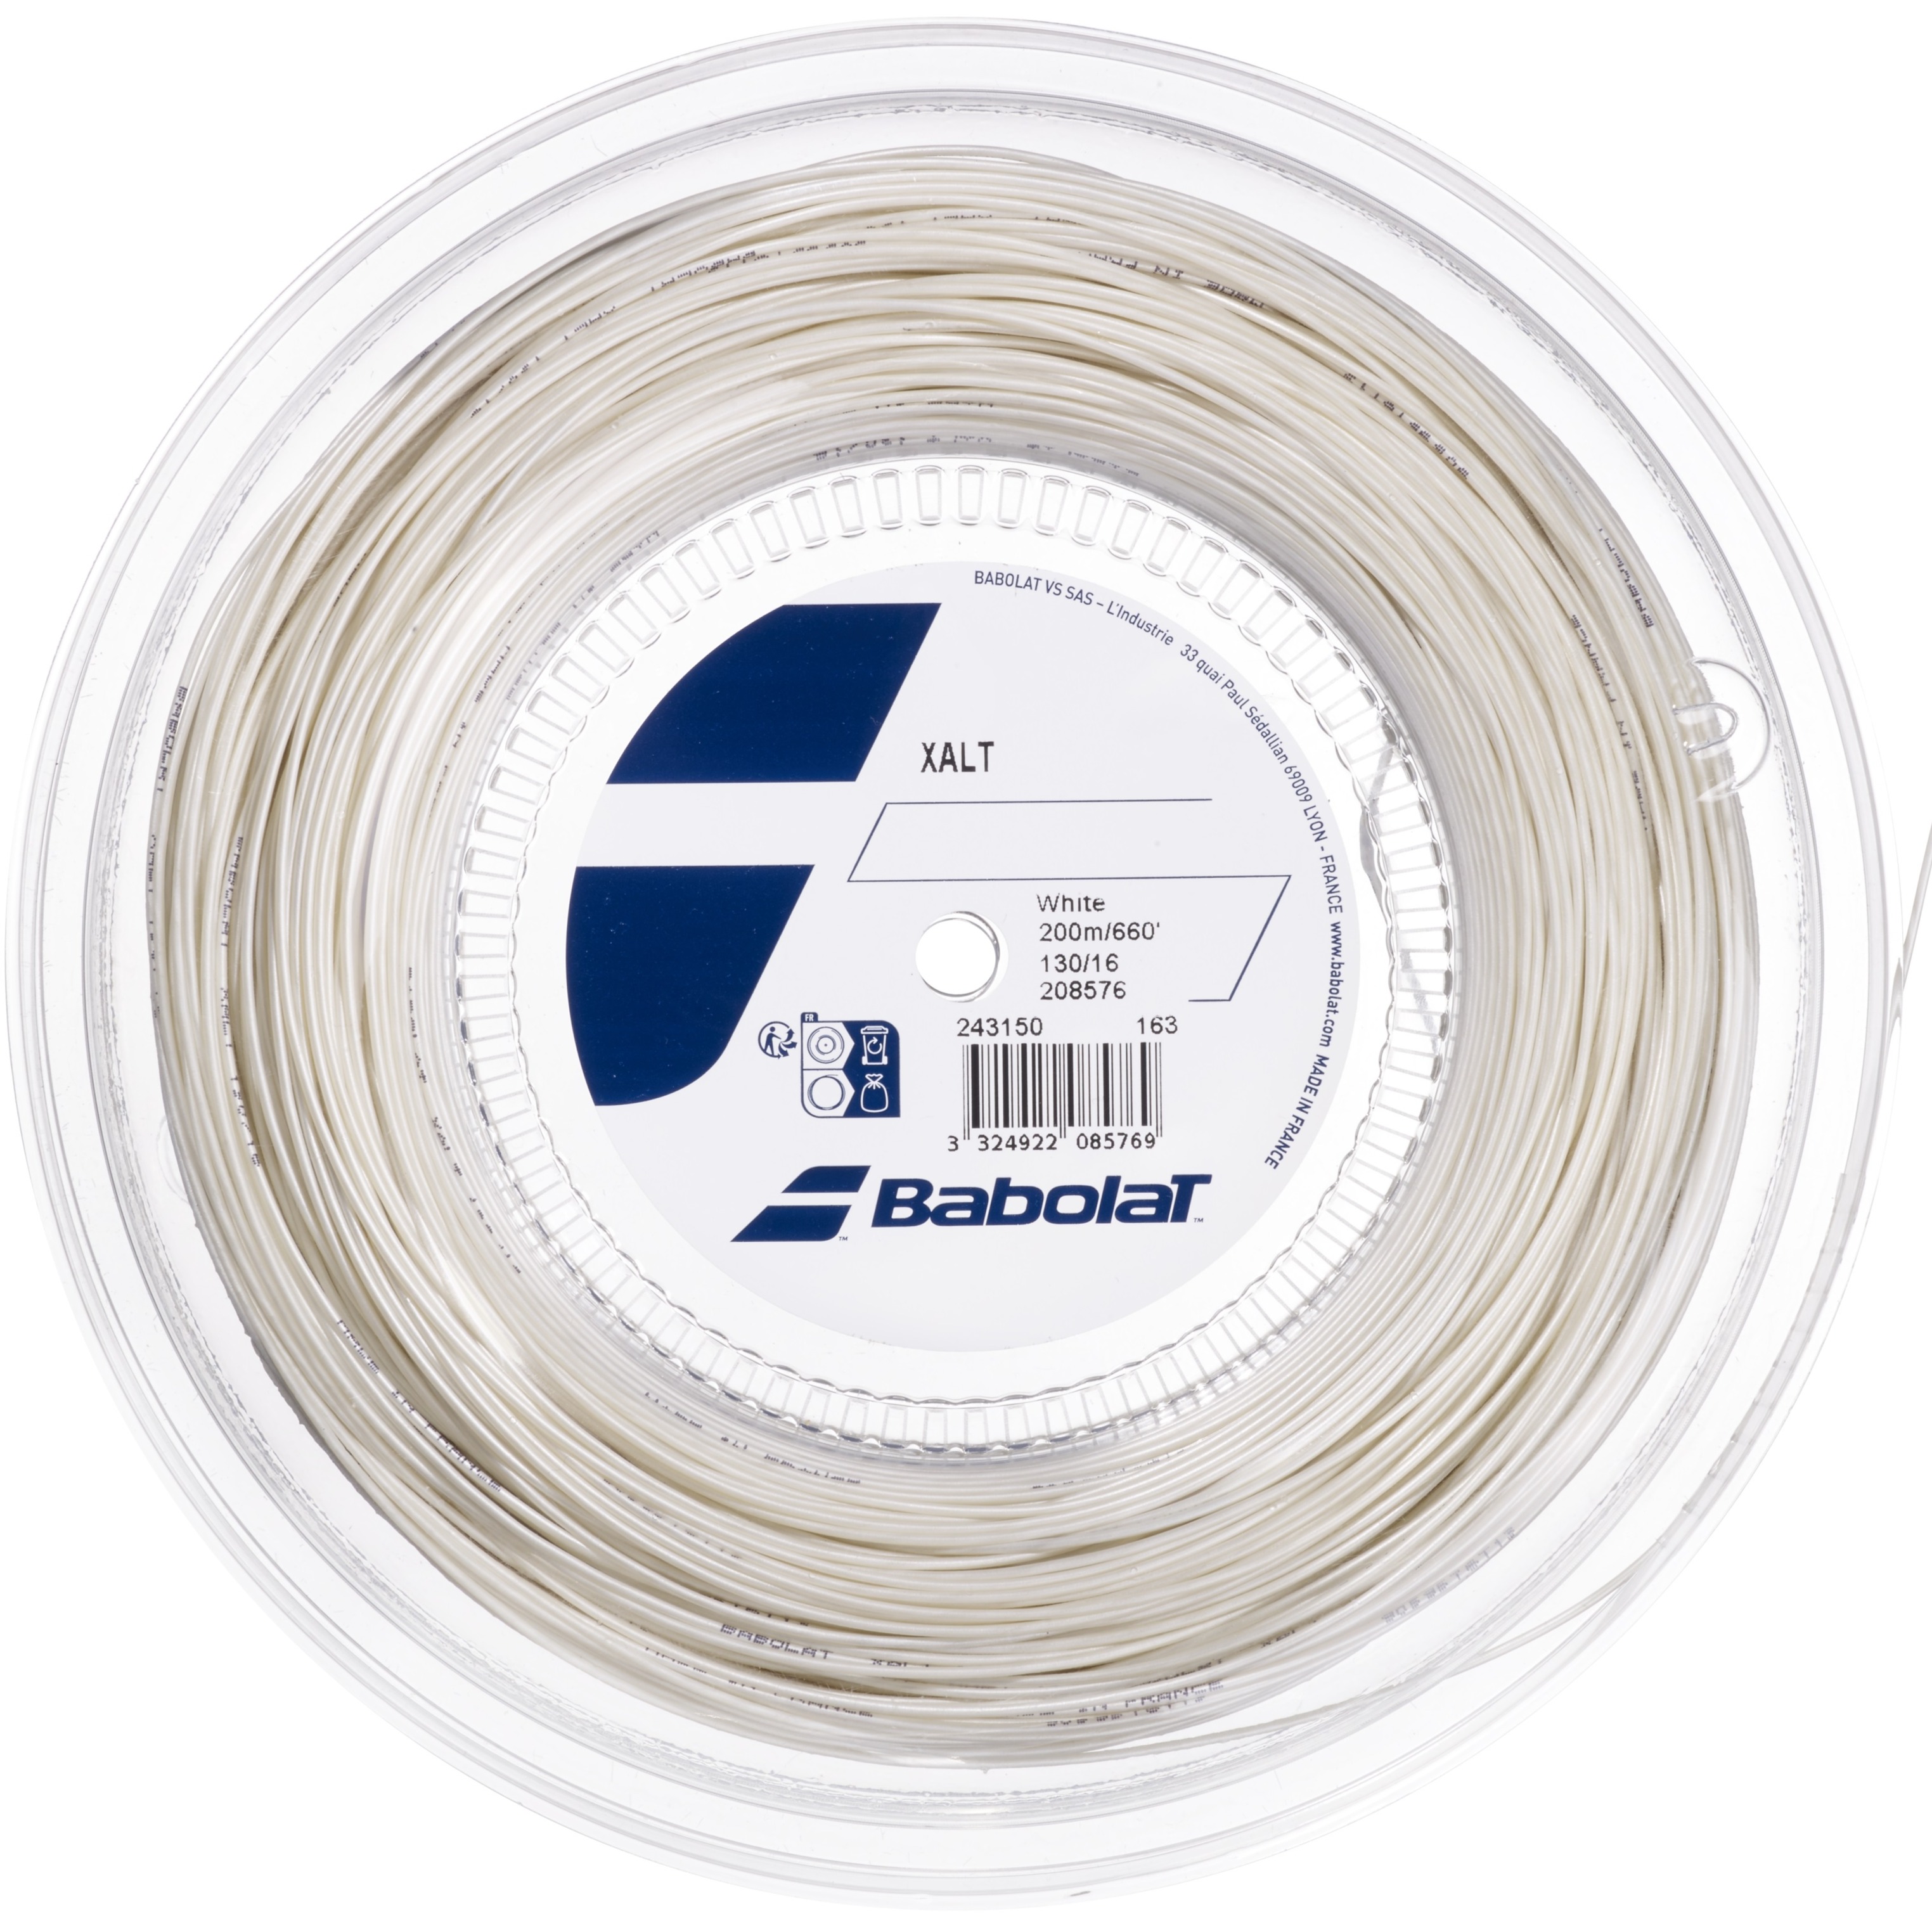 Babolat XALT 17g Spiral White Tennis String (Reel)